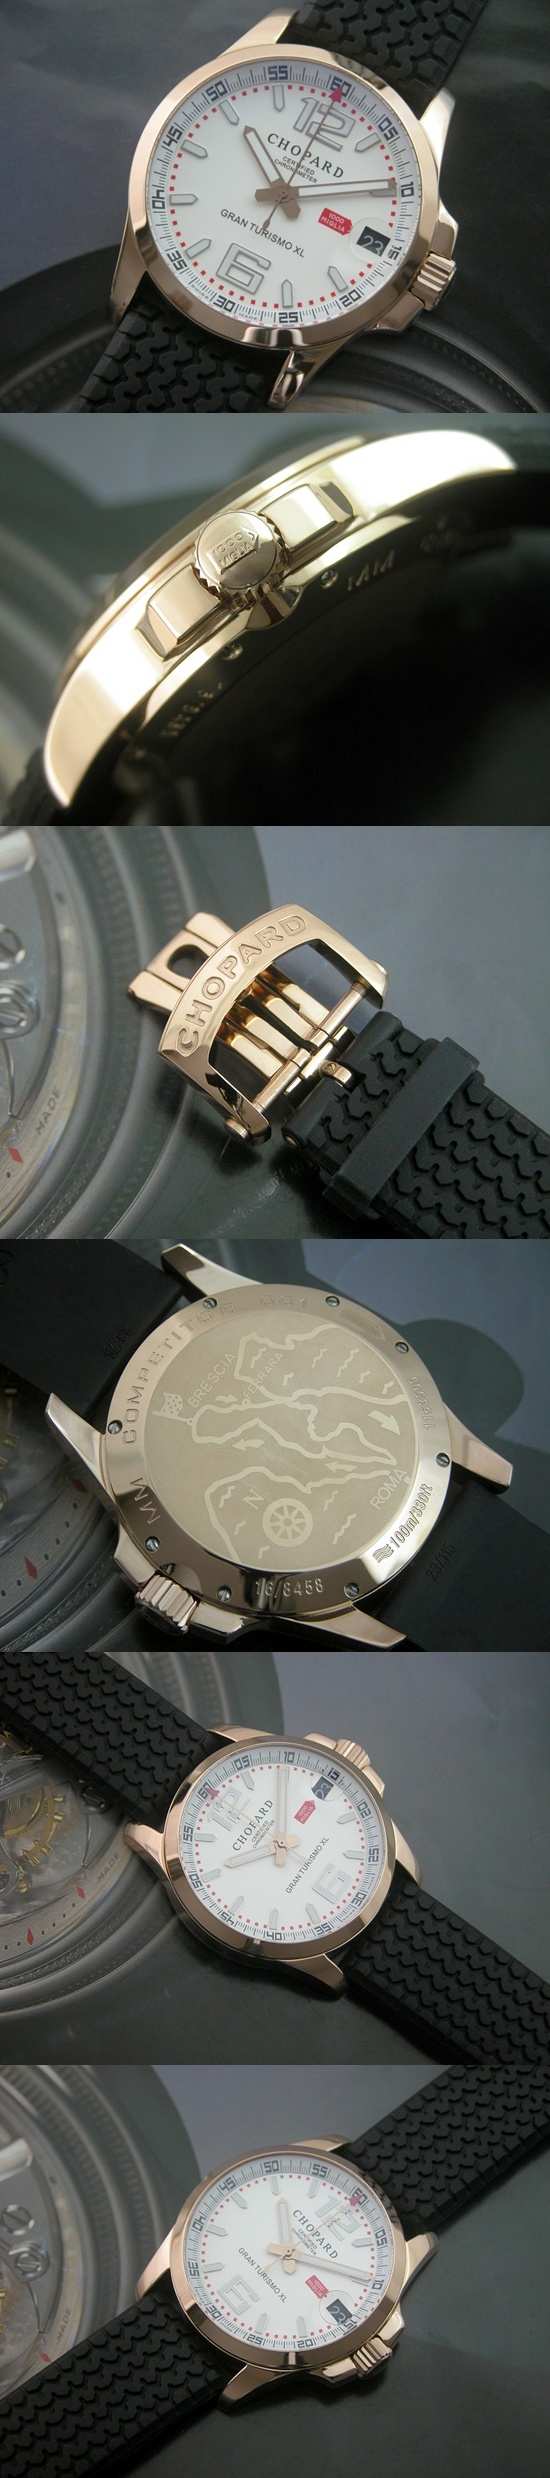 おしゃれなブランド時計がショパール-CHOPARD-ラ ストラーダ-CH00003S  男性用腕時計を提供します.